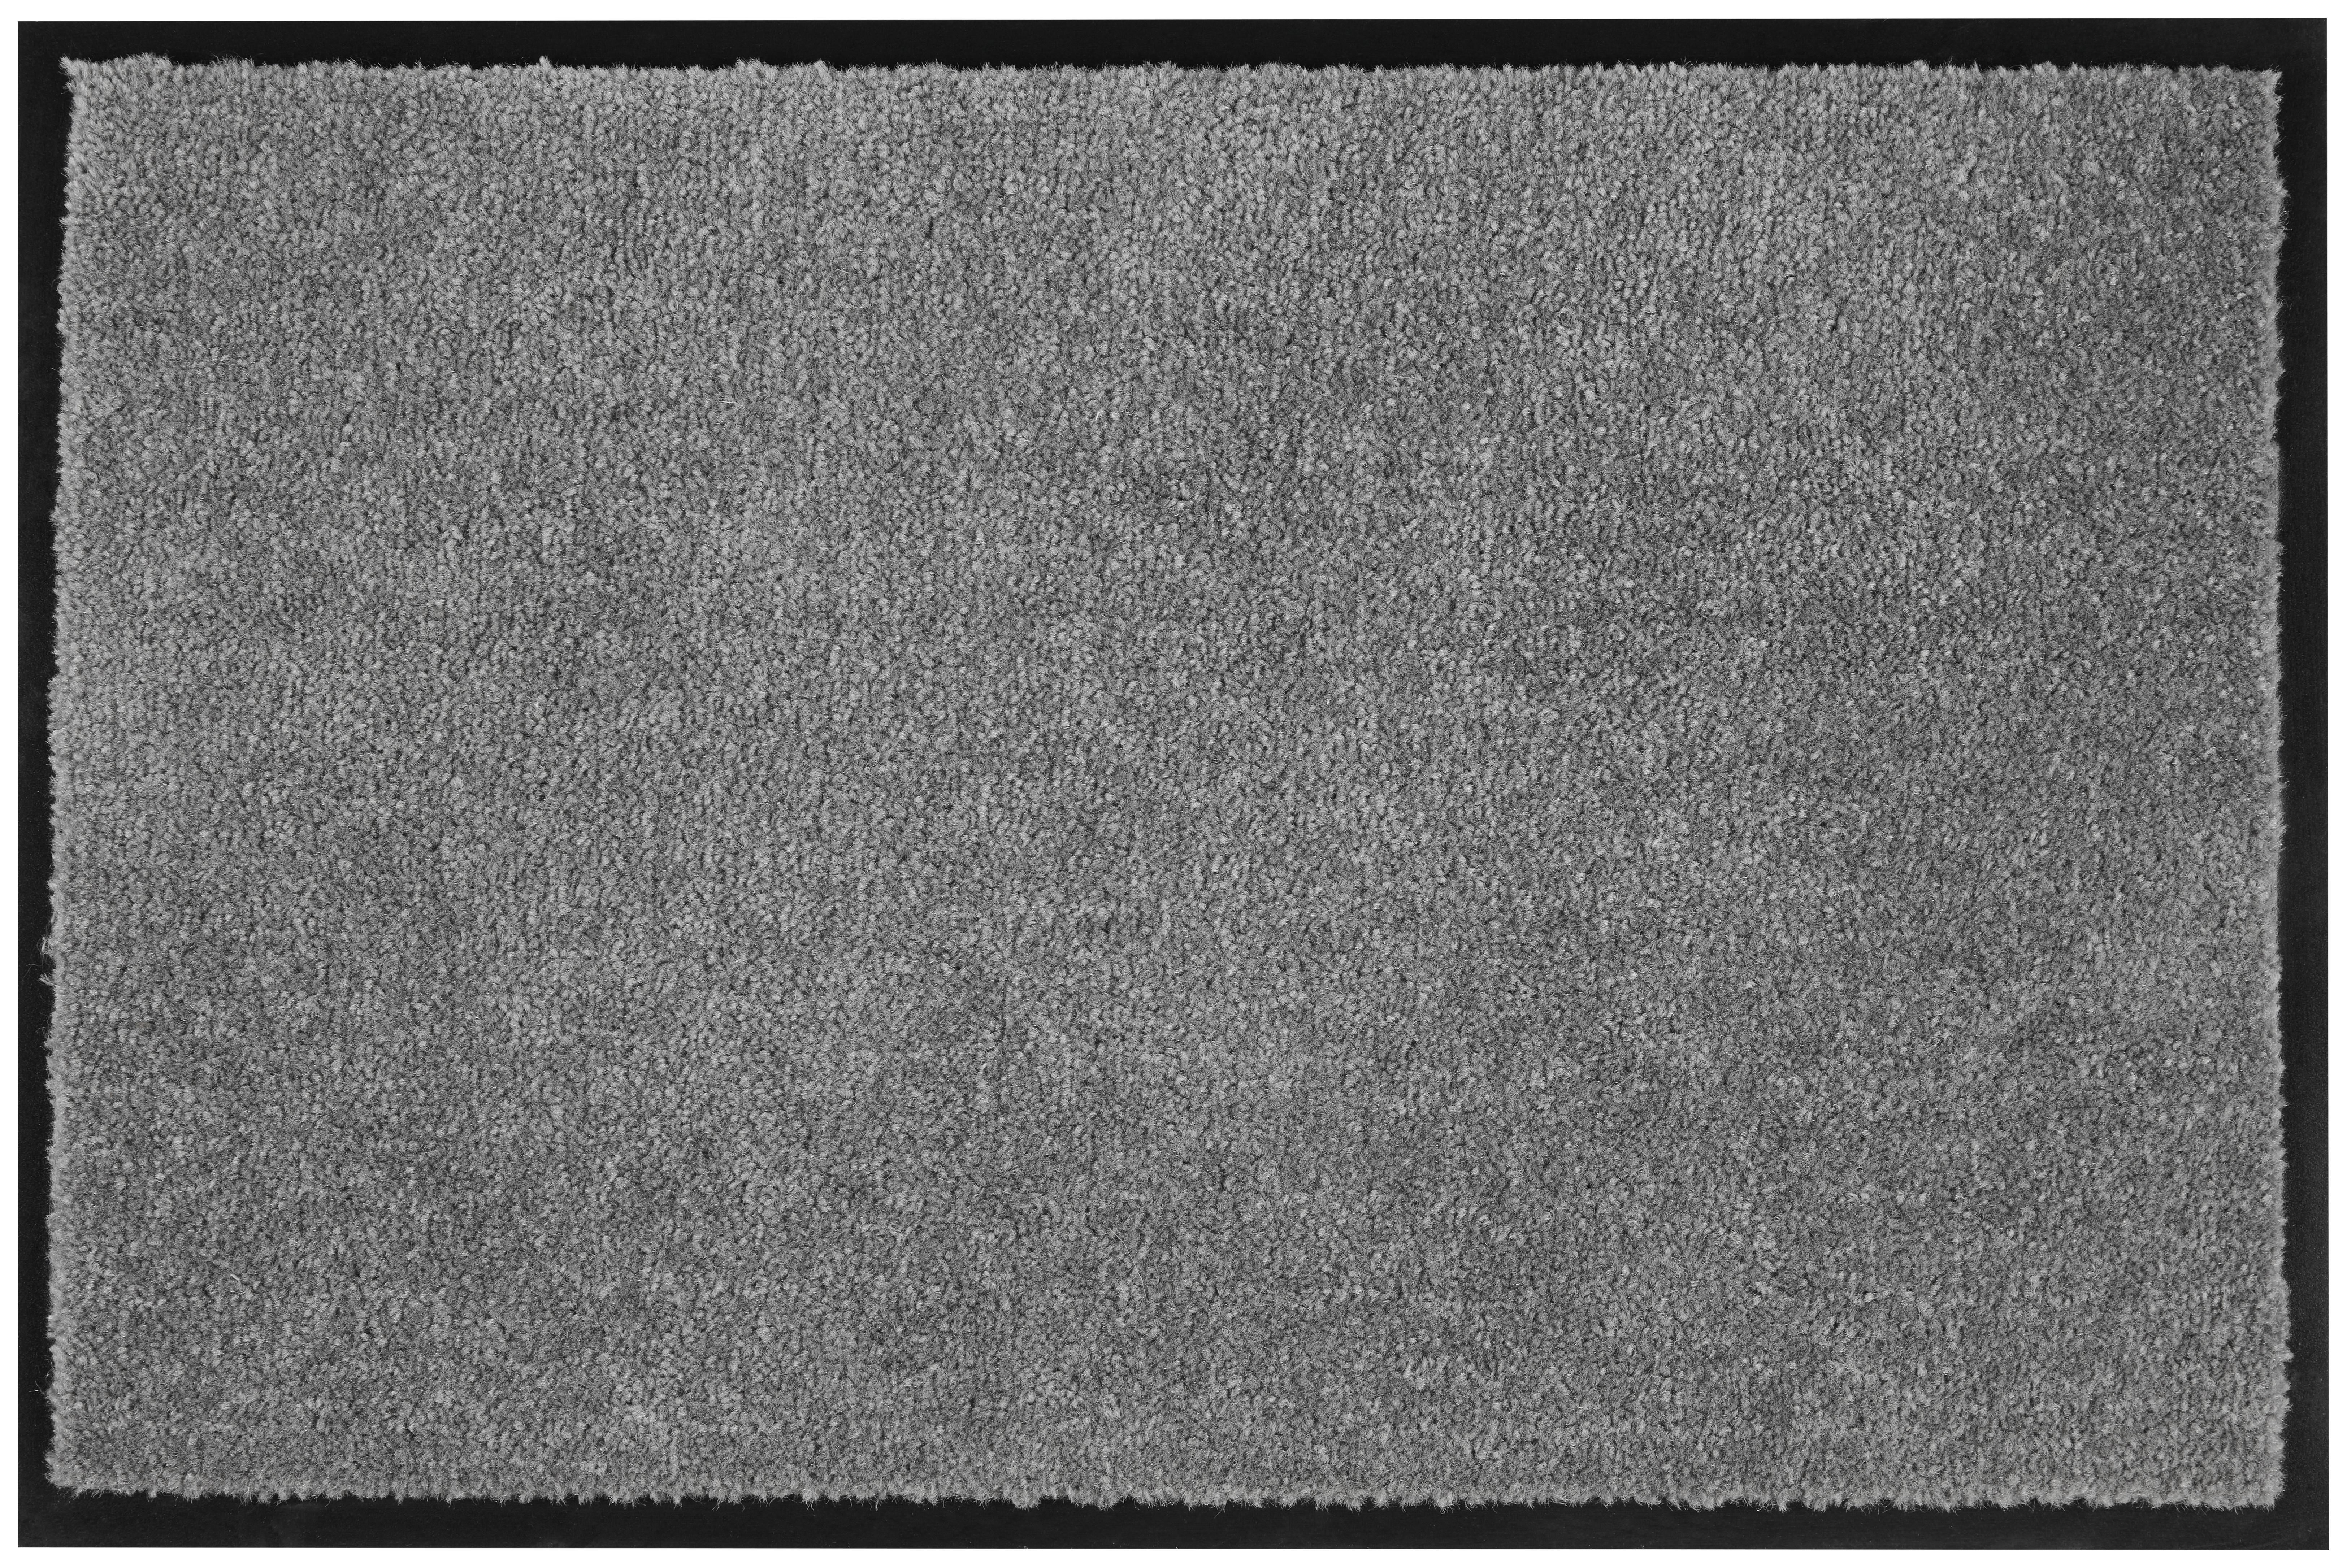 Fußmatte Eton in Anthrazit ca. 40x60cm - Anthrazit, MODERN, Textil (40/60cm) - Modern Living